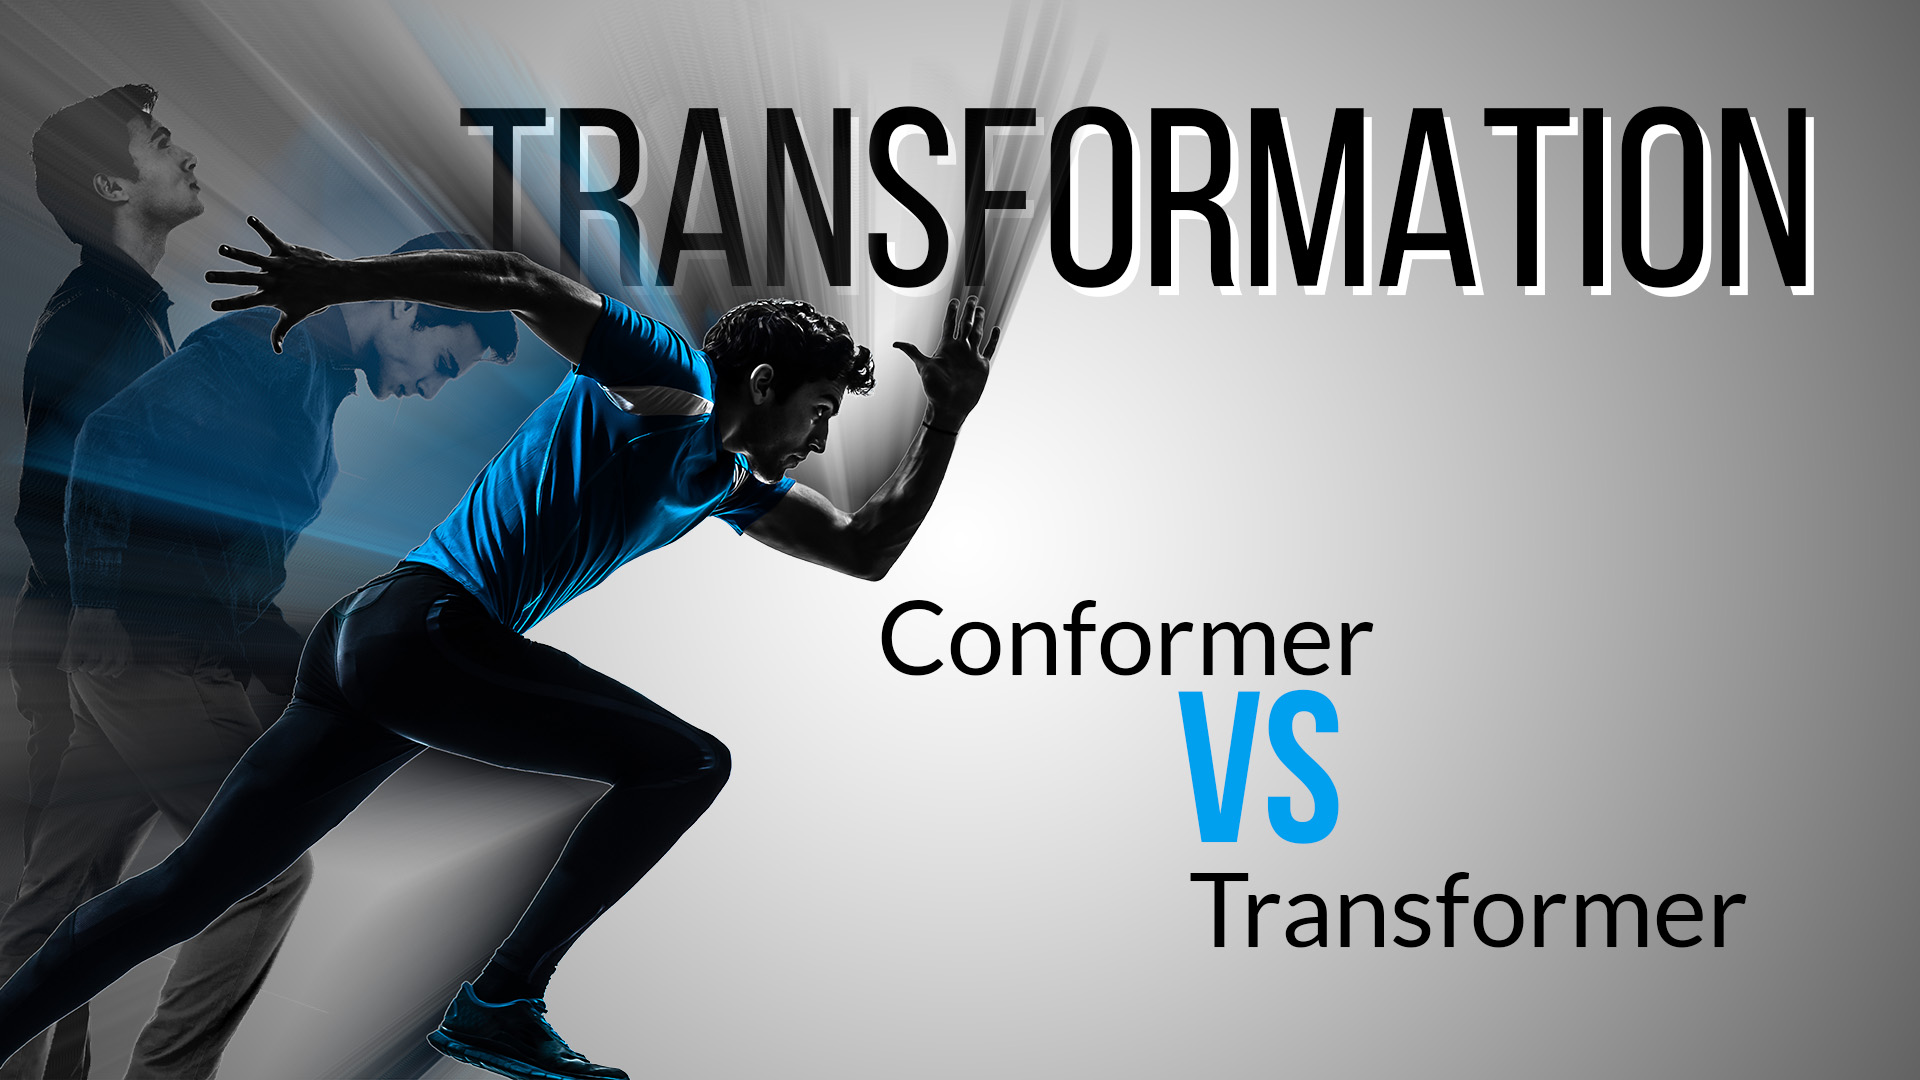 Transformation - Conformer vs Transformer